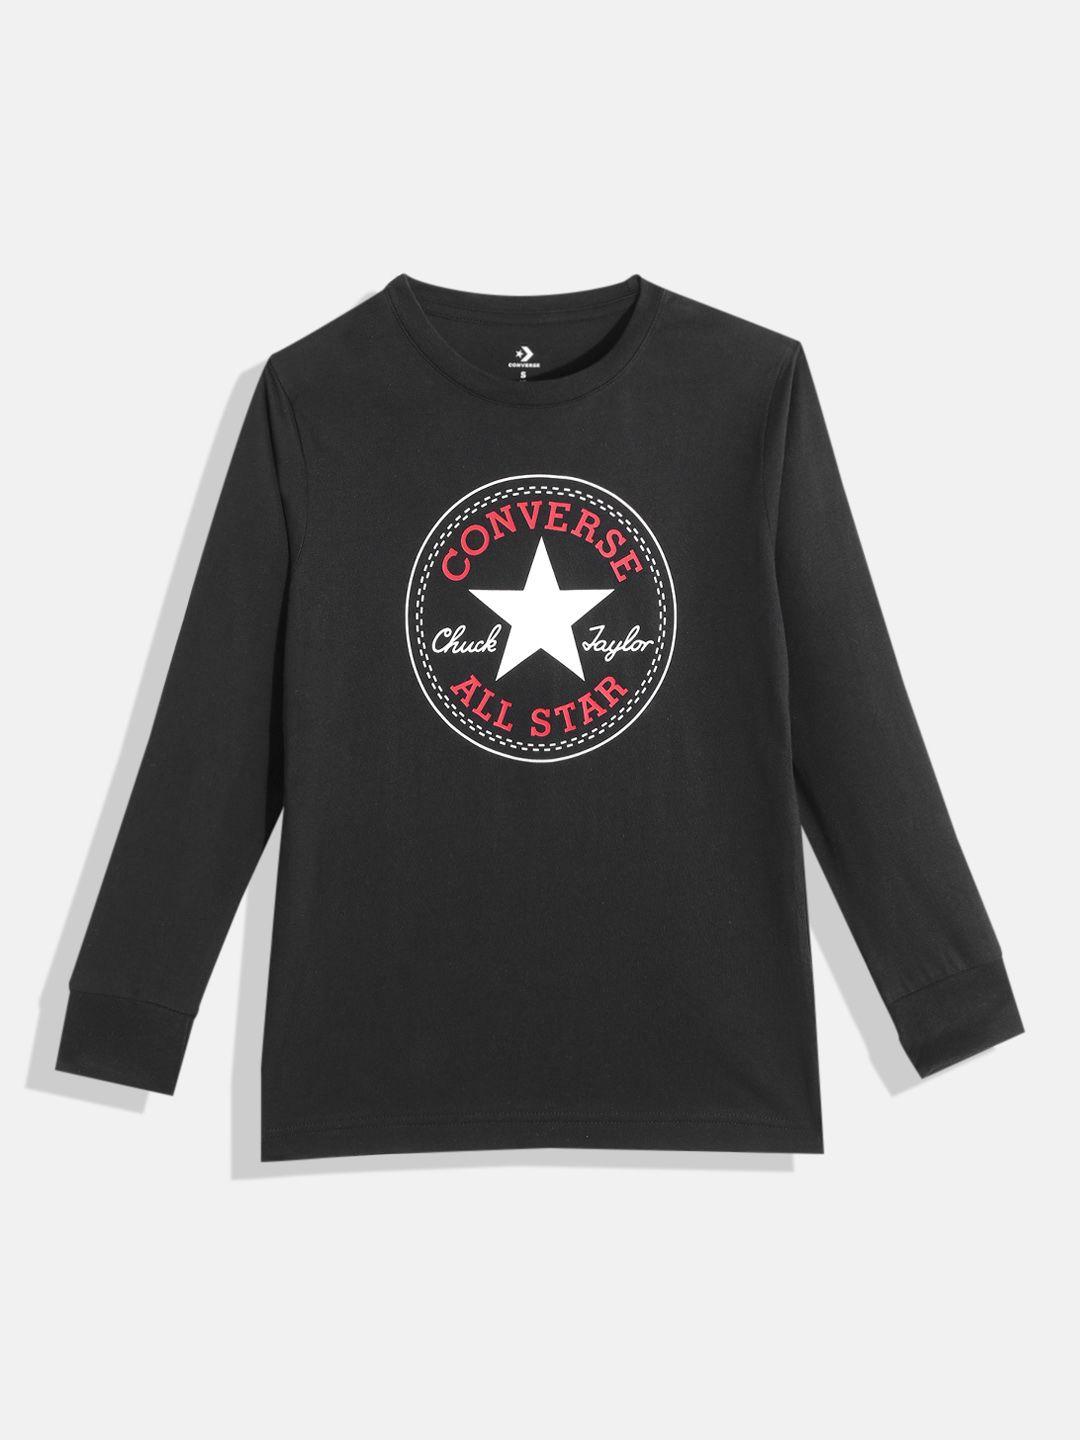 converse boys black & white brand logo print cotton t-shirt